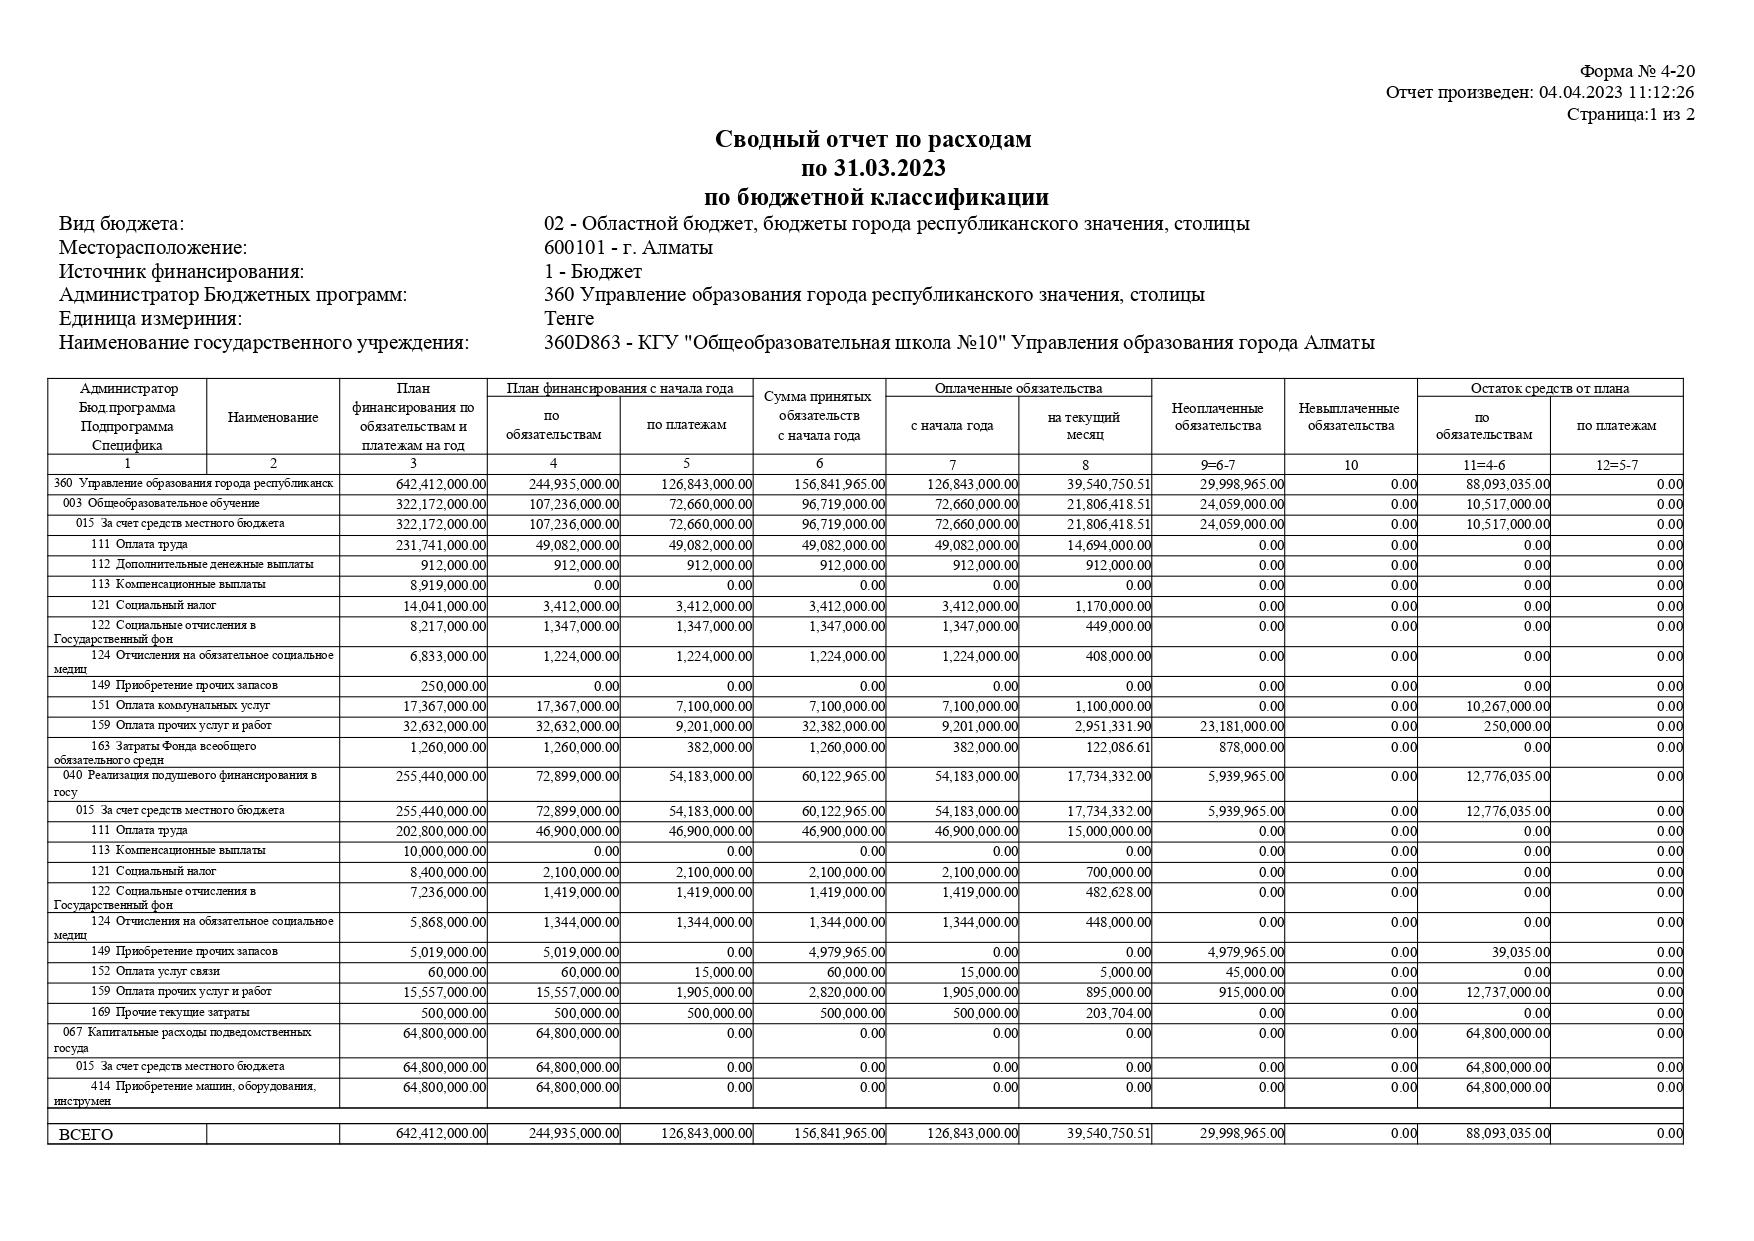 Шығыстар бойынша жиынтық есеп 31.03.2022 ж. /Сводный отчет по расходам на 31.03.2023